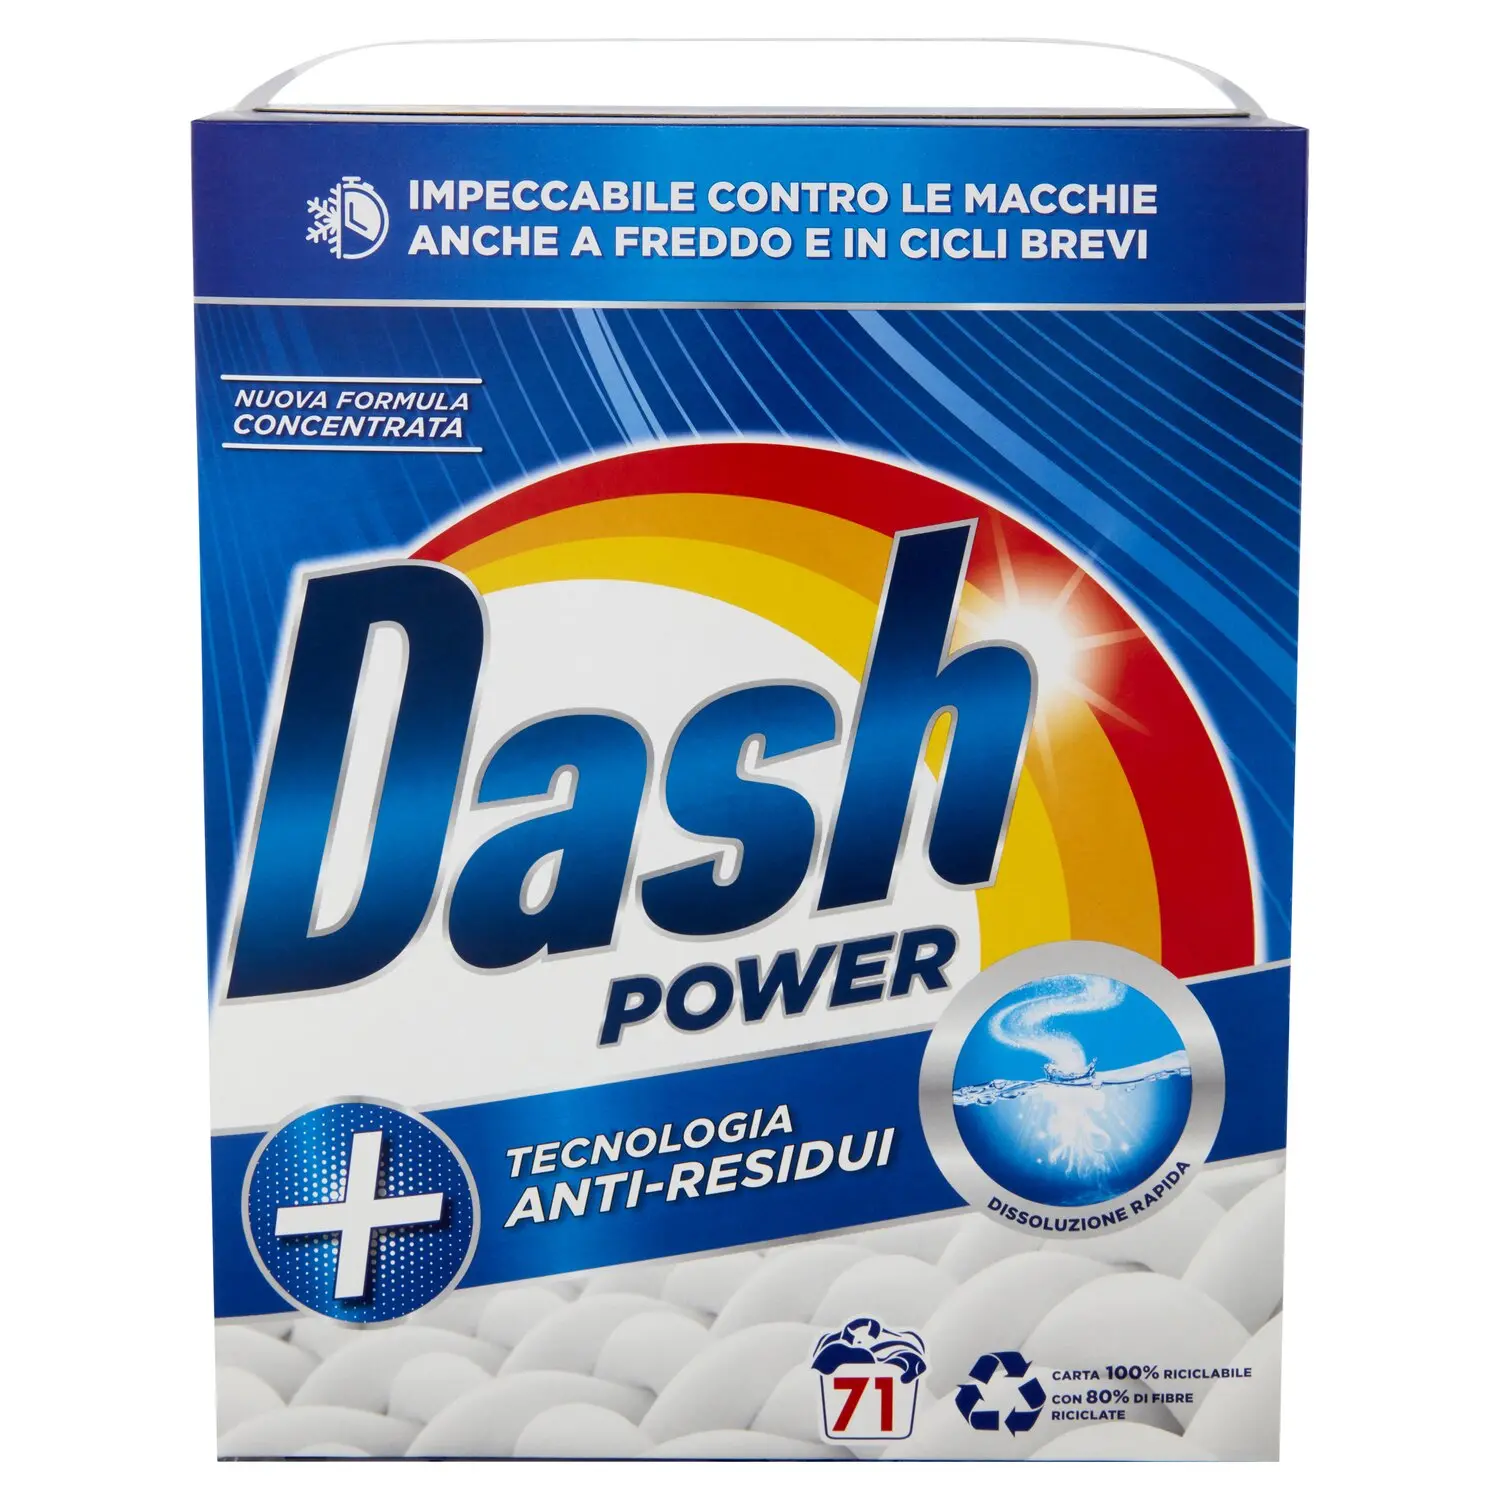 Dash Power Detersivo Lavatrice in Polvere, Tecnologia Anti-Residui, 71  Lavaggi 3550 g